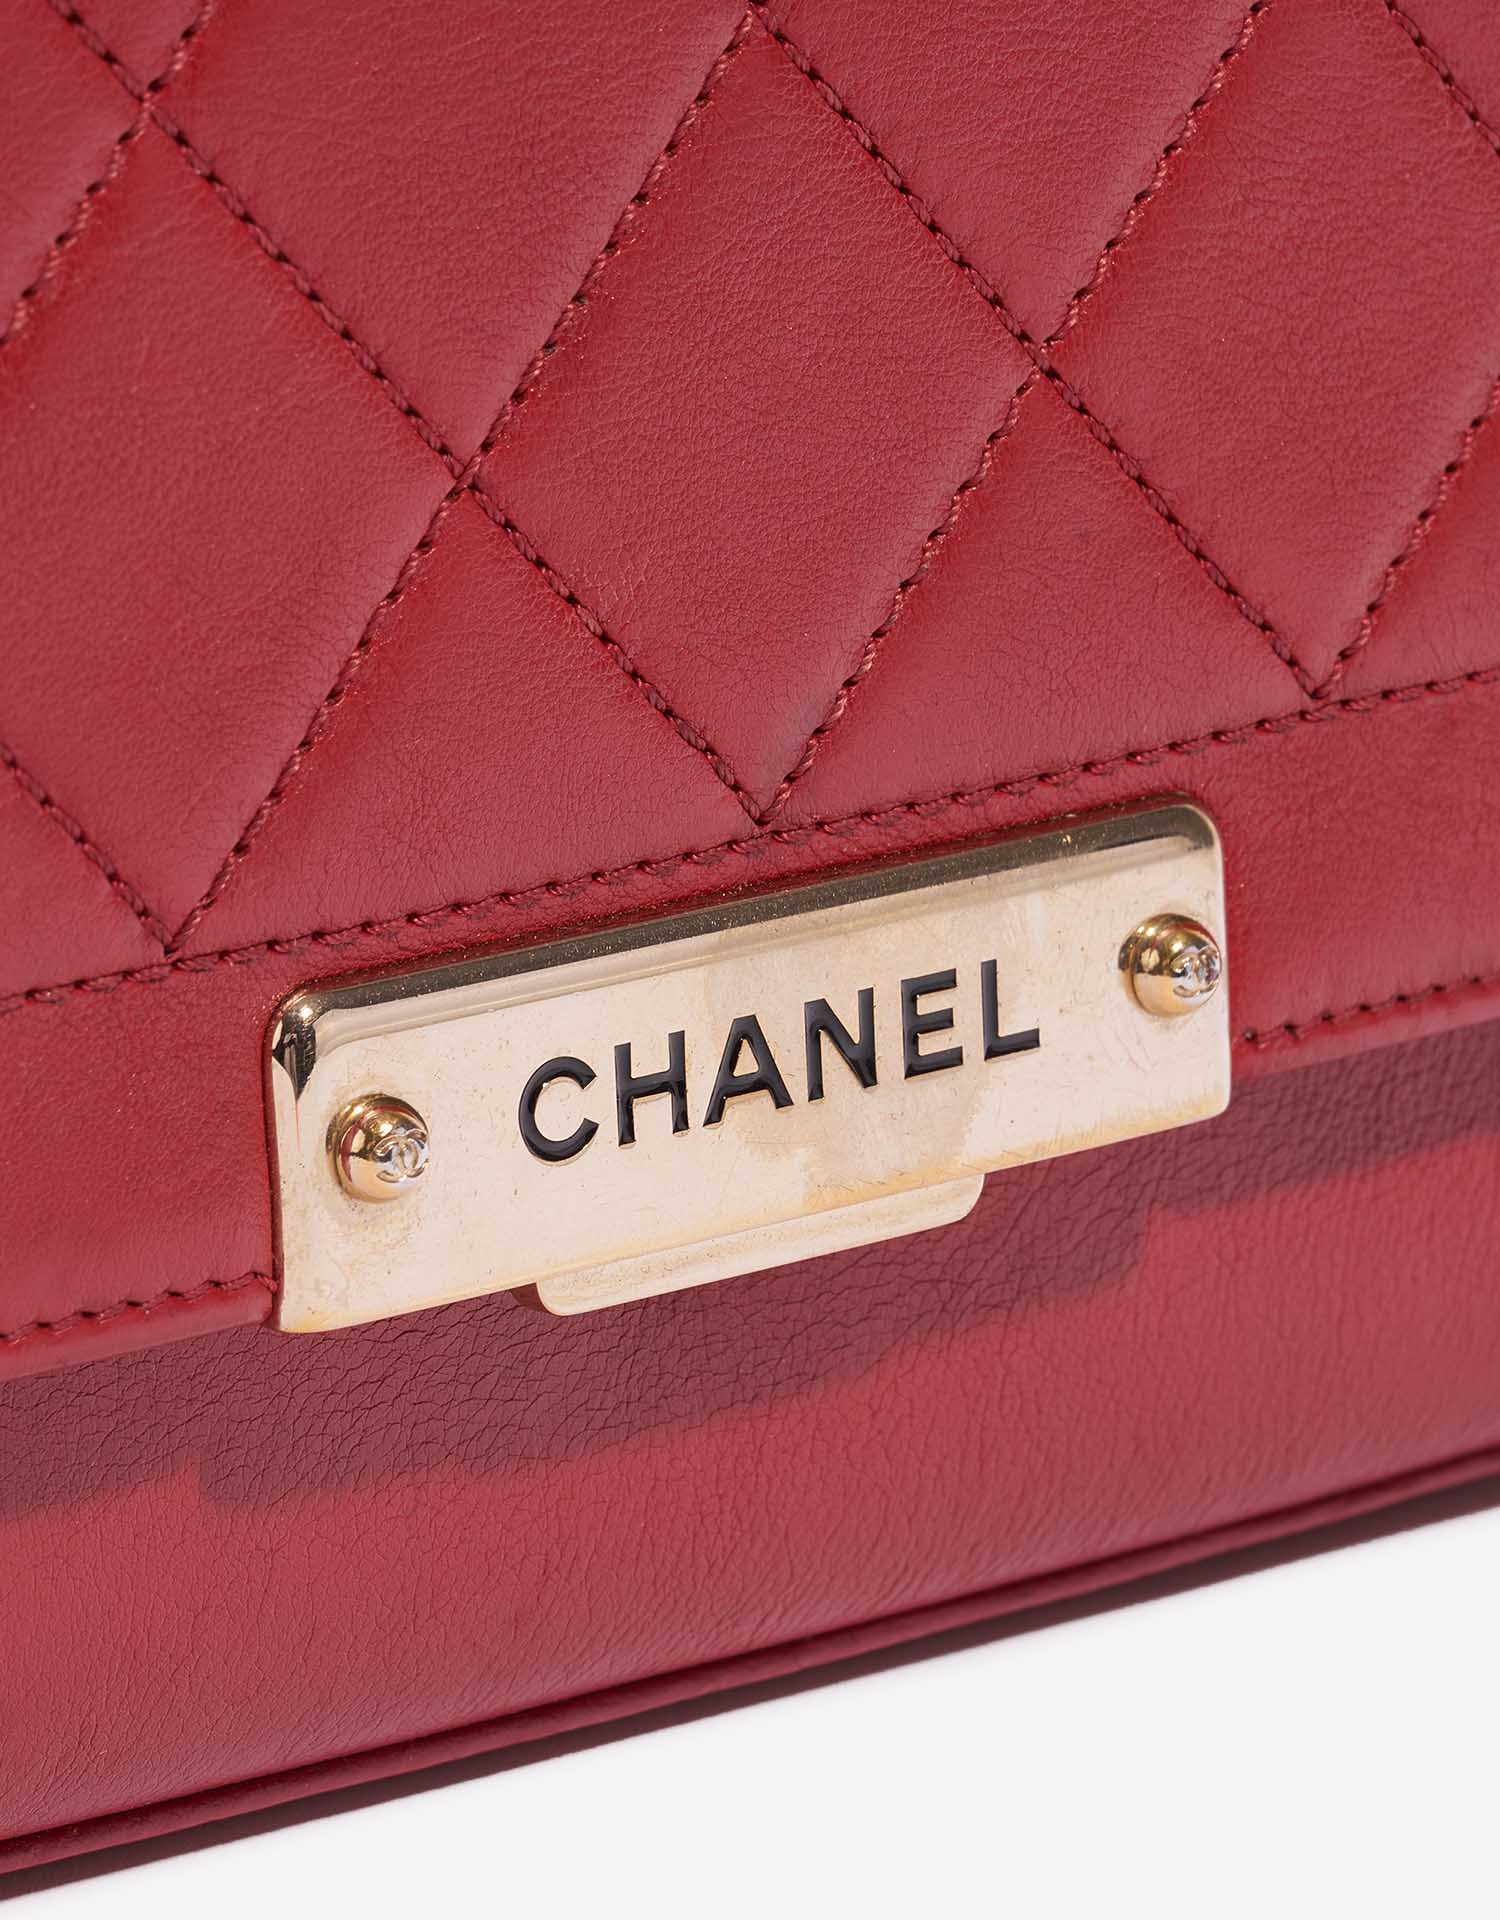 Pre-owned Chanel Tasche Flap Bag Handle Lammleder Red Red Closing System | Verkaufen Sie Ihre Designer-Tasche auf Saclab.com